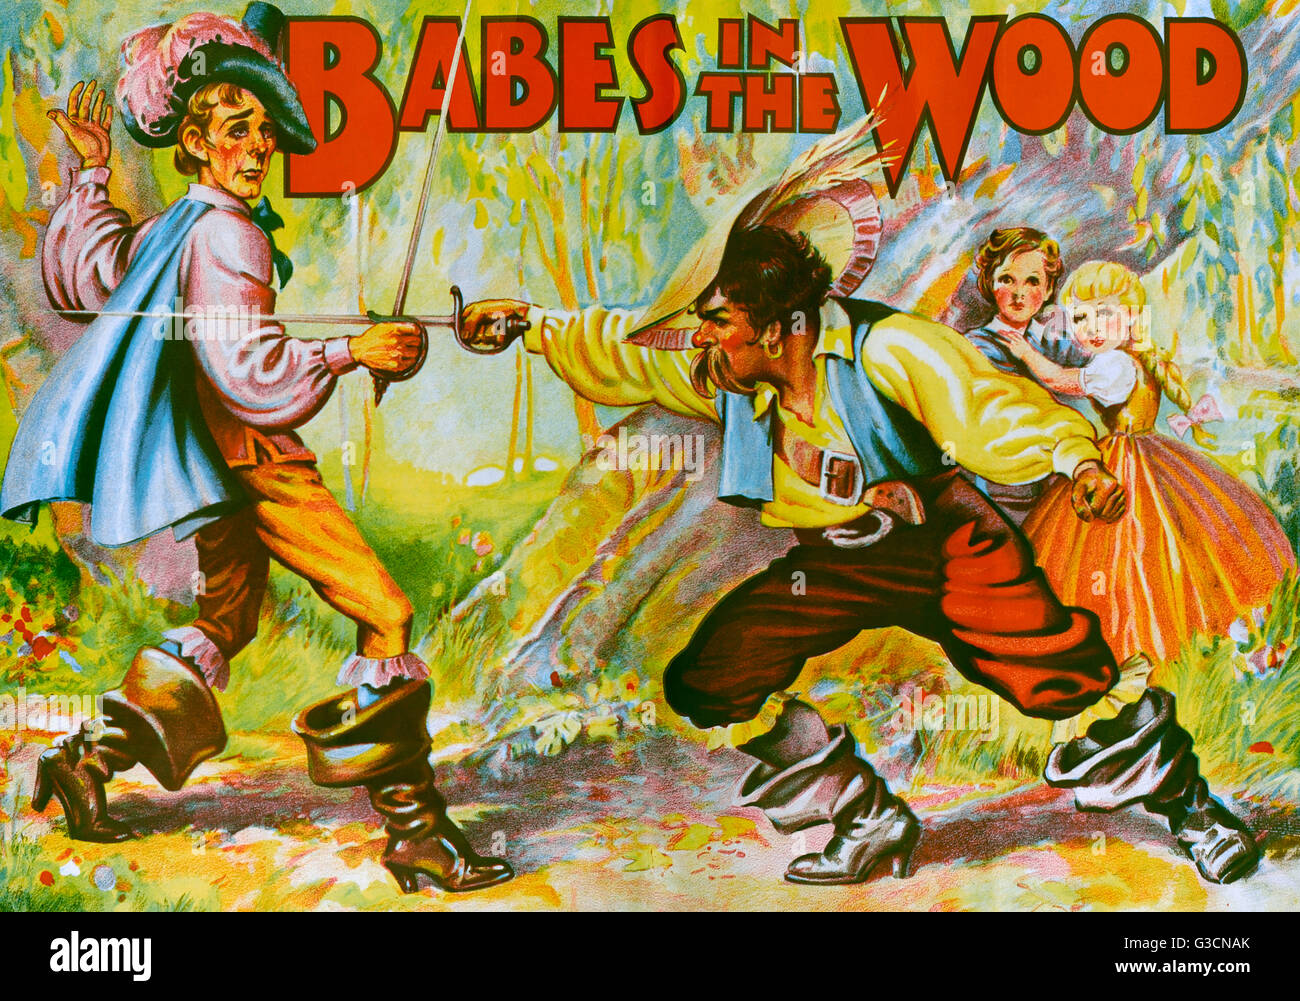 Affiche pour Babes dans le Bois Banque D'Images